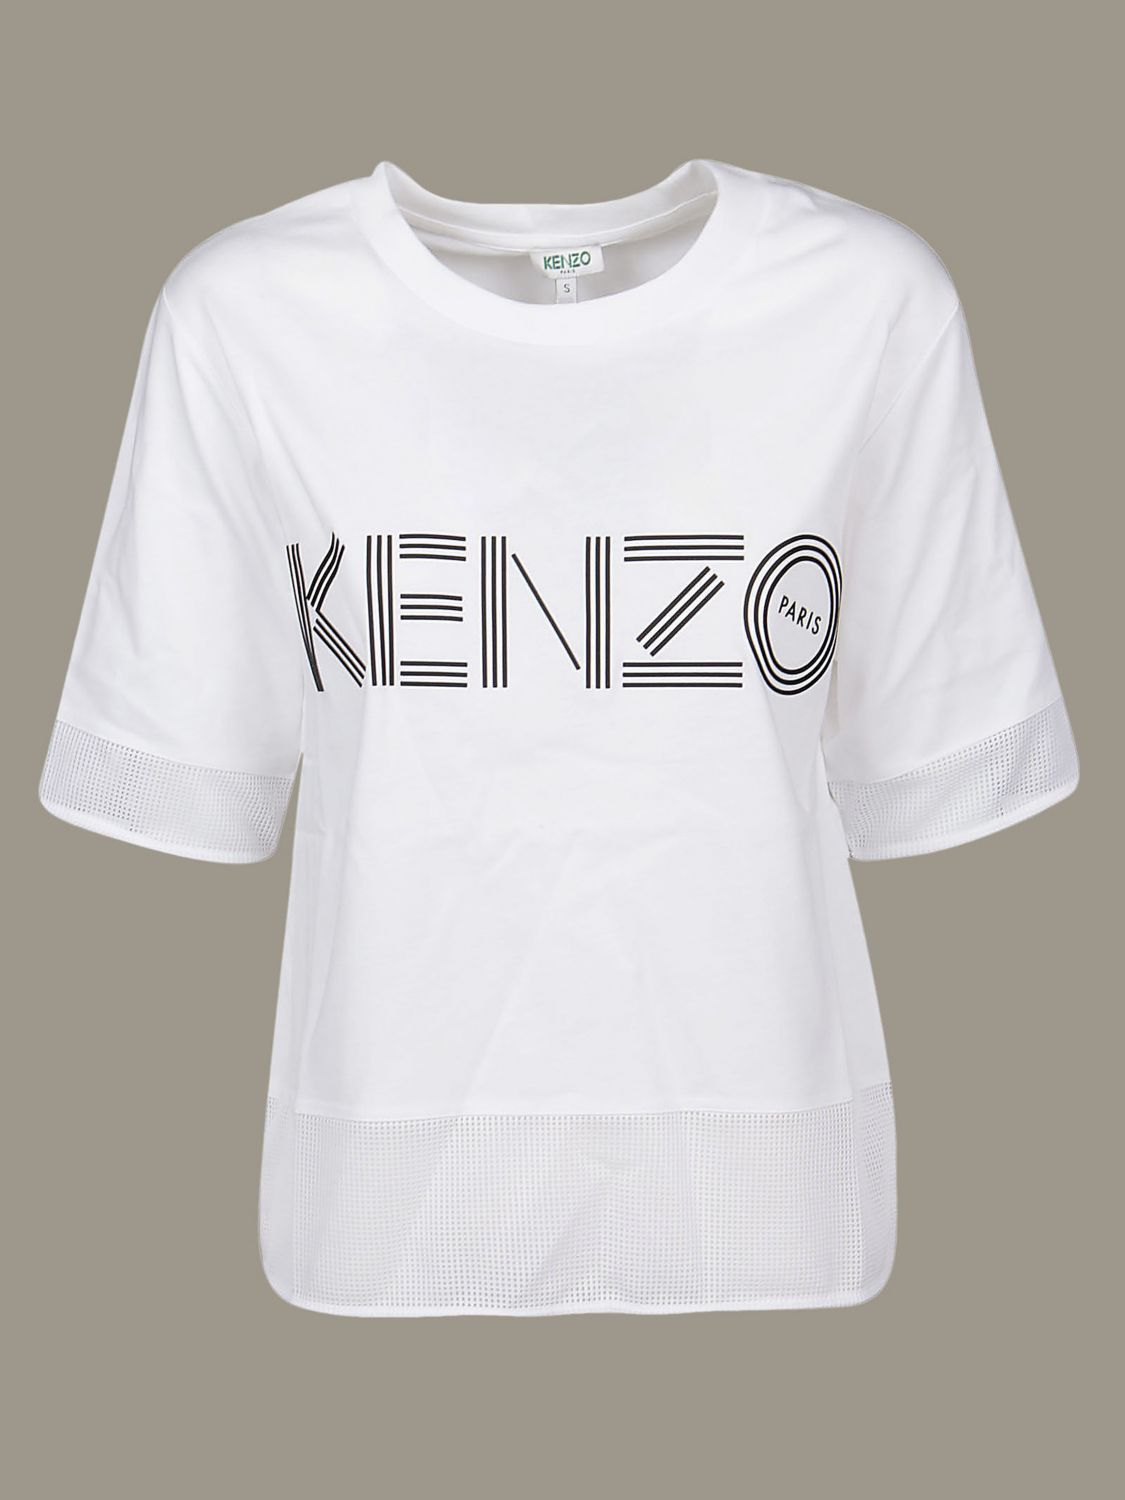 kenzo t shirt women's white